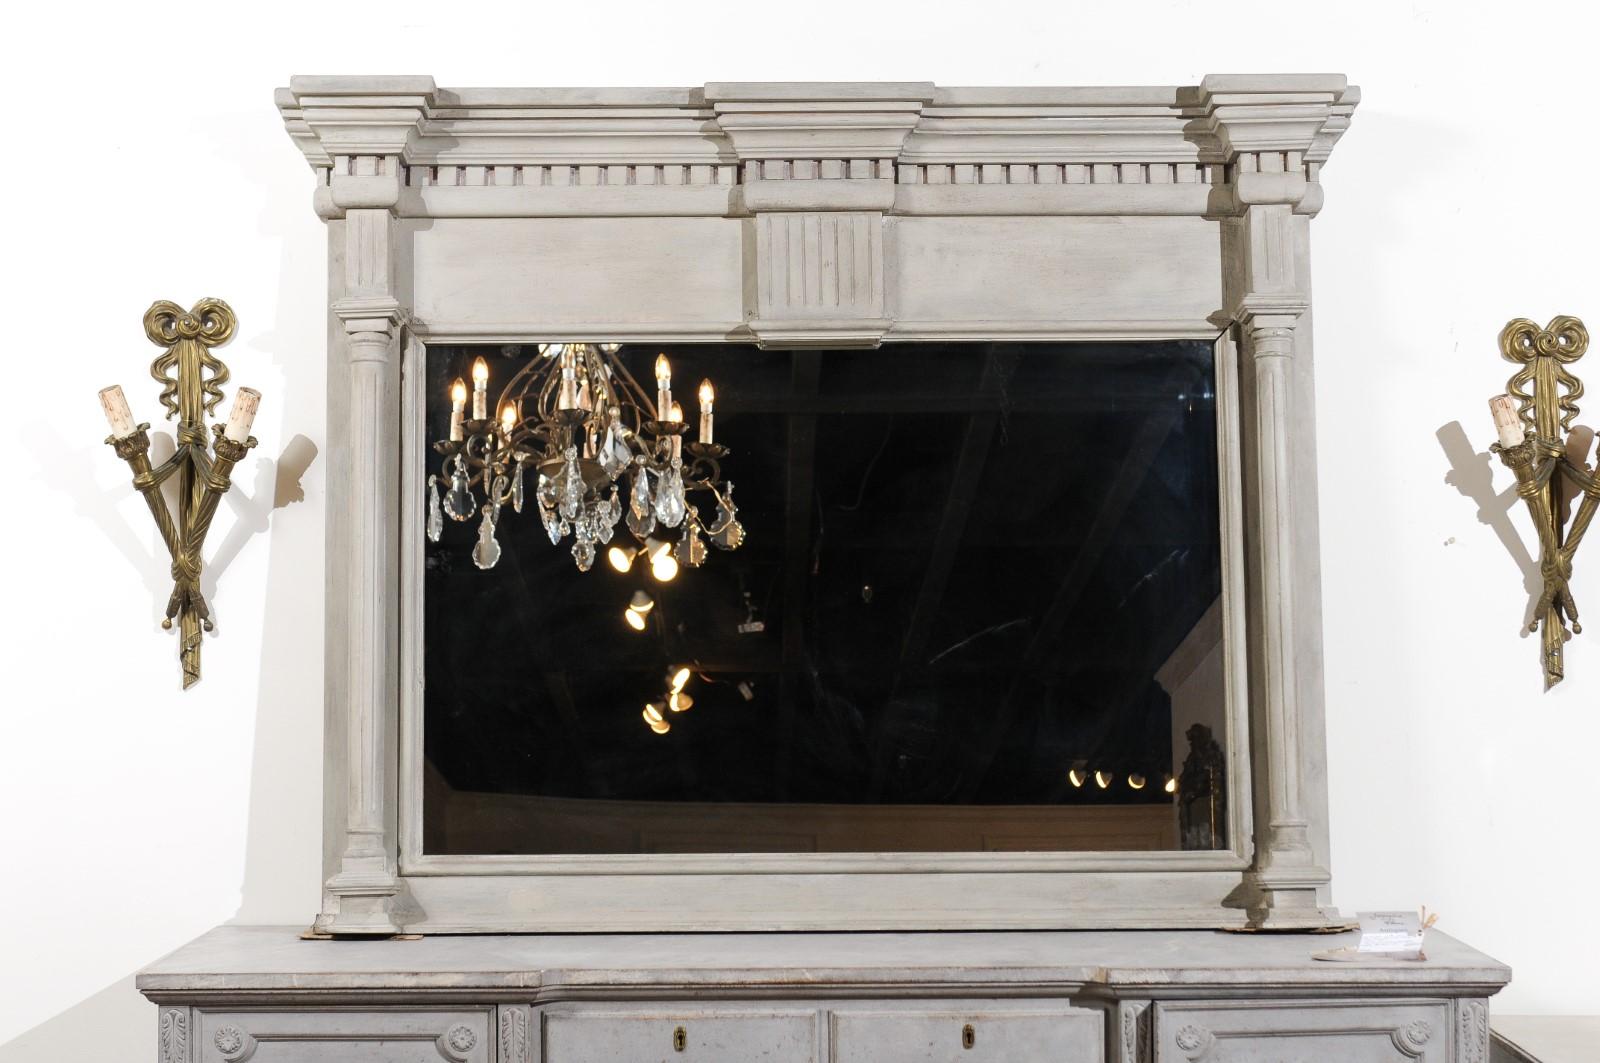 Ein französisches architektonisches Element im neoklassizistischen Stil aus dem 19. Jahrhundert in Form eines Trumeau-Spiegels. Dieses im 19. Jahrhundert in Frankreich entstandene architektonische Element im neoklassizistischen Stil weist eine